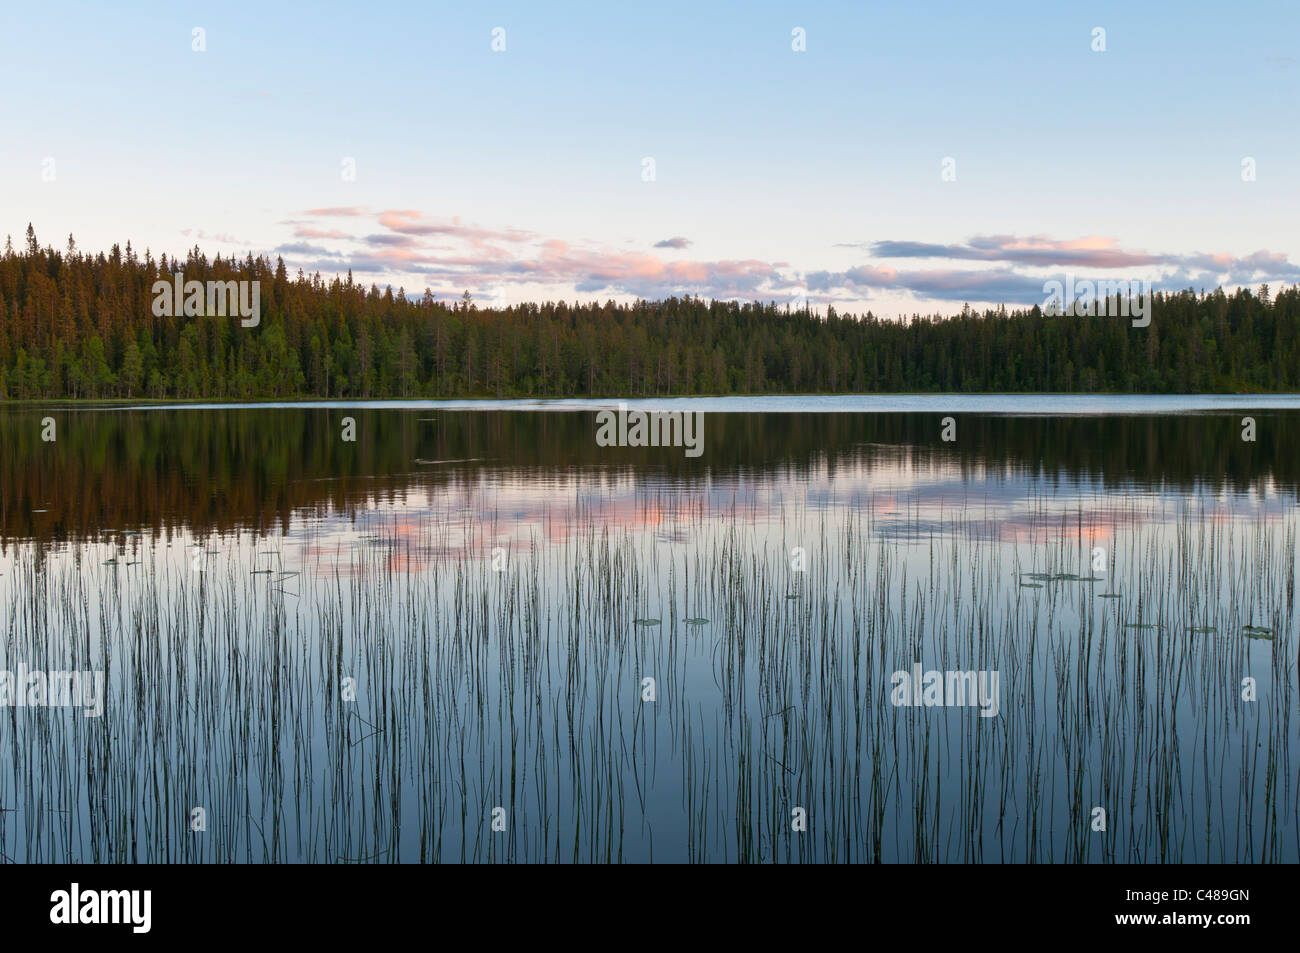 Abendstimmung an einem Waldsee, Rena, Hedmark, Norwegen, Evening mood, Lake, Norway Stock Photo